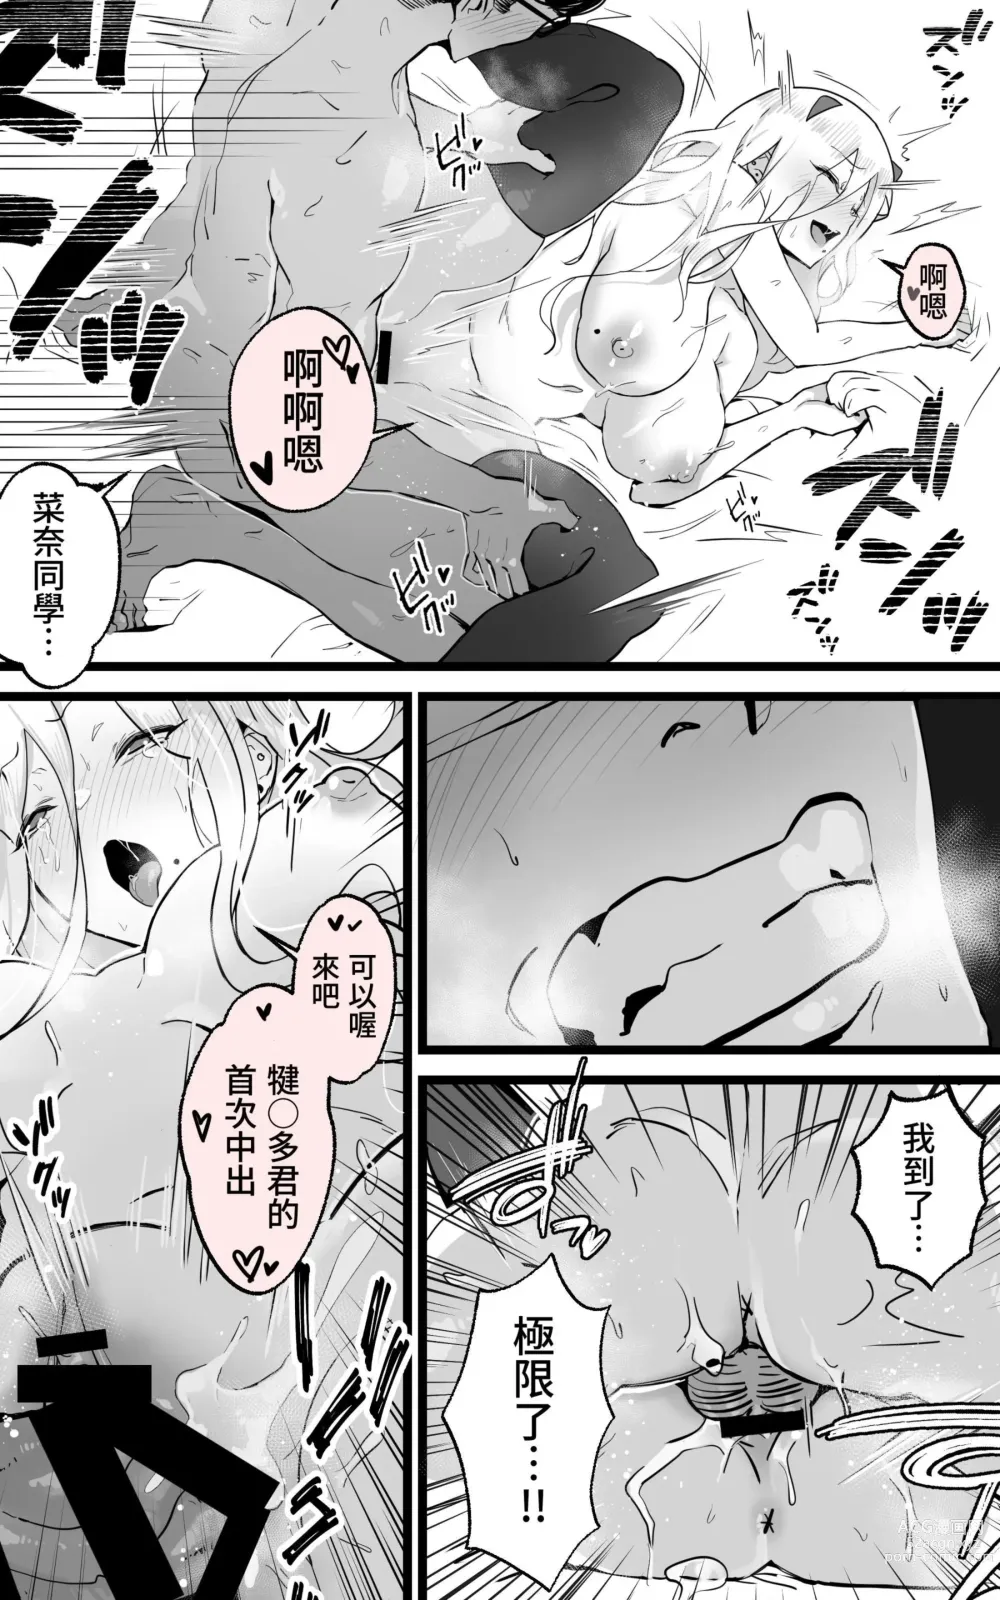 Page 28 of doujinshi 與在秋葉原遇到的辣妹同班同學變成砲友的故事-白·黑整合版